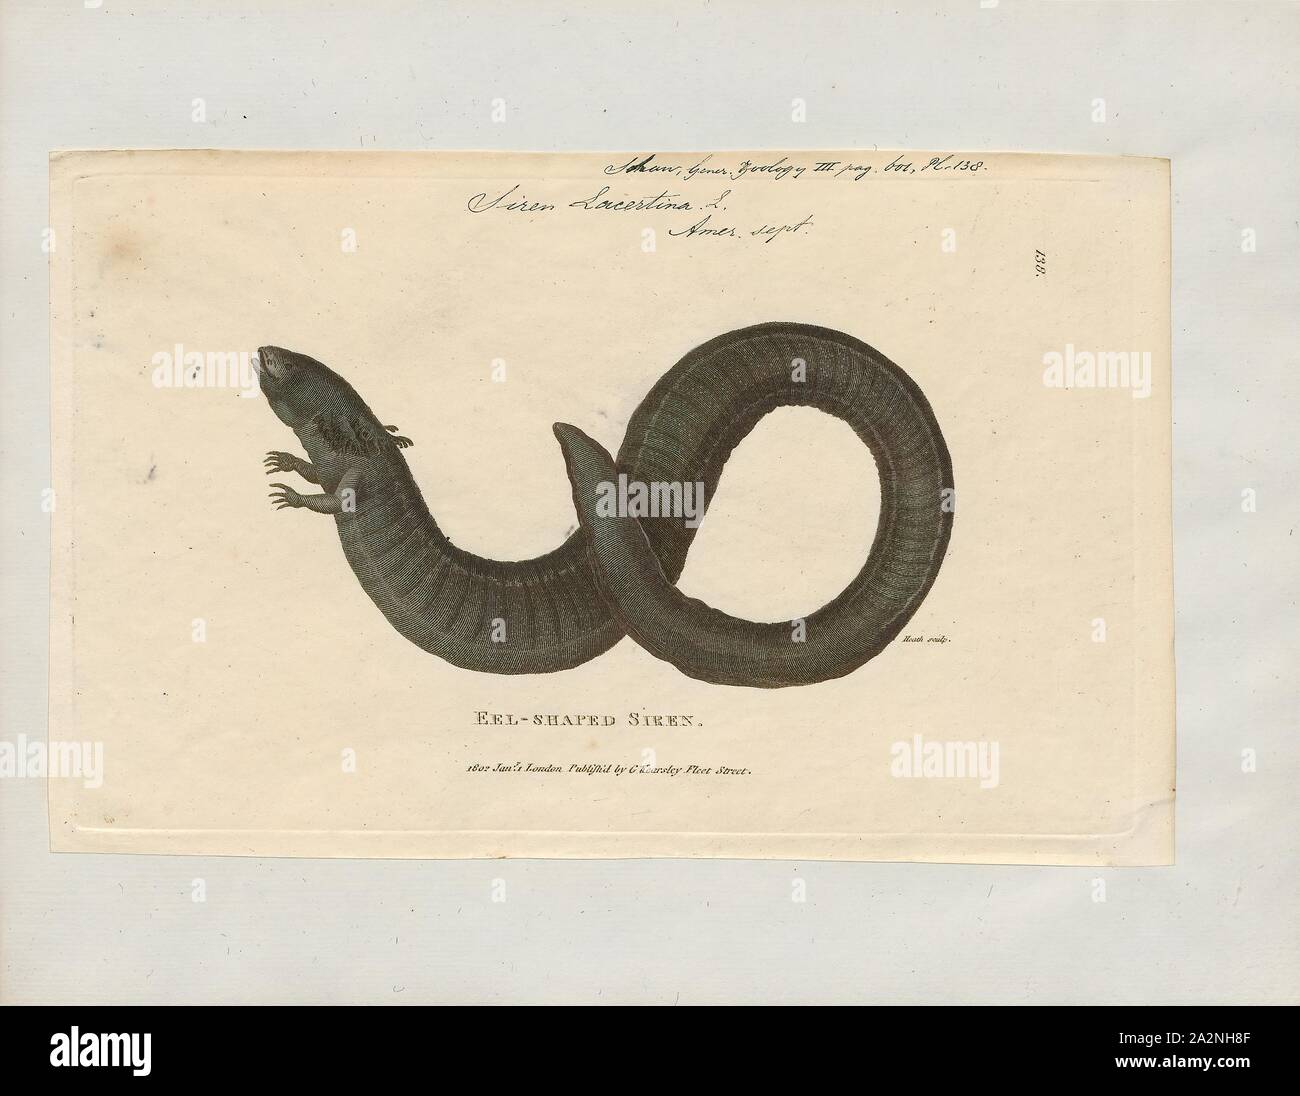 Siren lacertina, Drucken, die größere Sirene (Siren lacertina) ist ein Aal - wie Amphibien und eines der drei Mitglieder der Gattung Sirene. Die größte der Sirenen und einer der größten Amphibien in Nordamerika, die größere Sirene befindet sich in den Küstenebenen von der südöstlichen USA., 1700-1880 Stockfoto